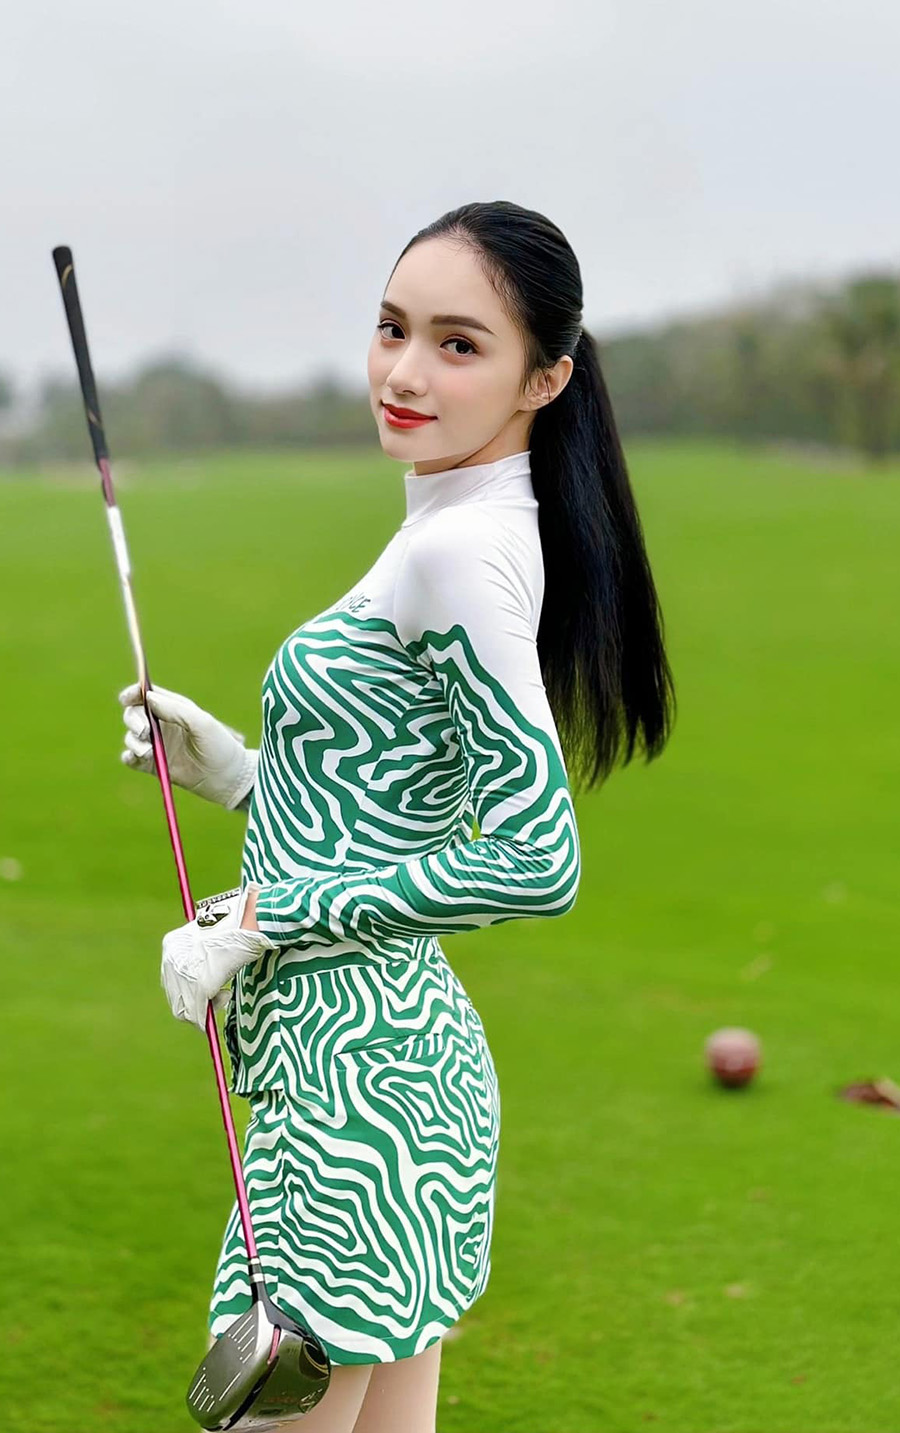 Hương Giang yêu thích môn golf nên sắm nhiều trang phục có kiểu dáng khác nhau. Set đồ yêu thích của cô là chân váy ngắn kết hợp áo thun đồng điệu.